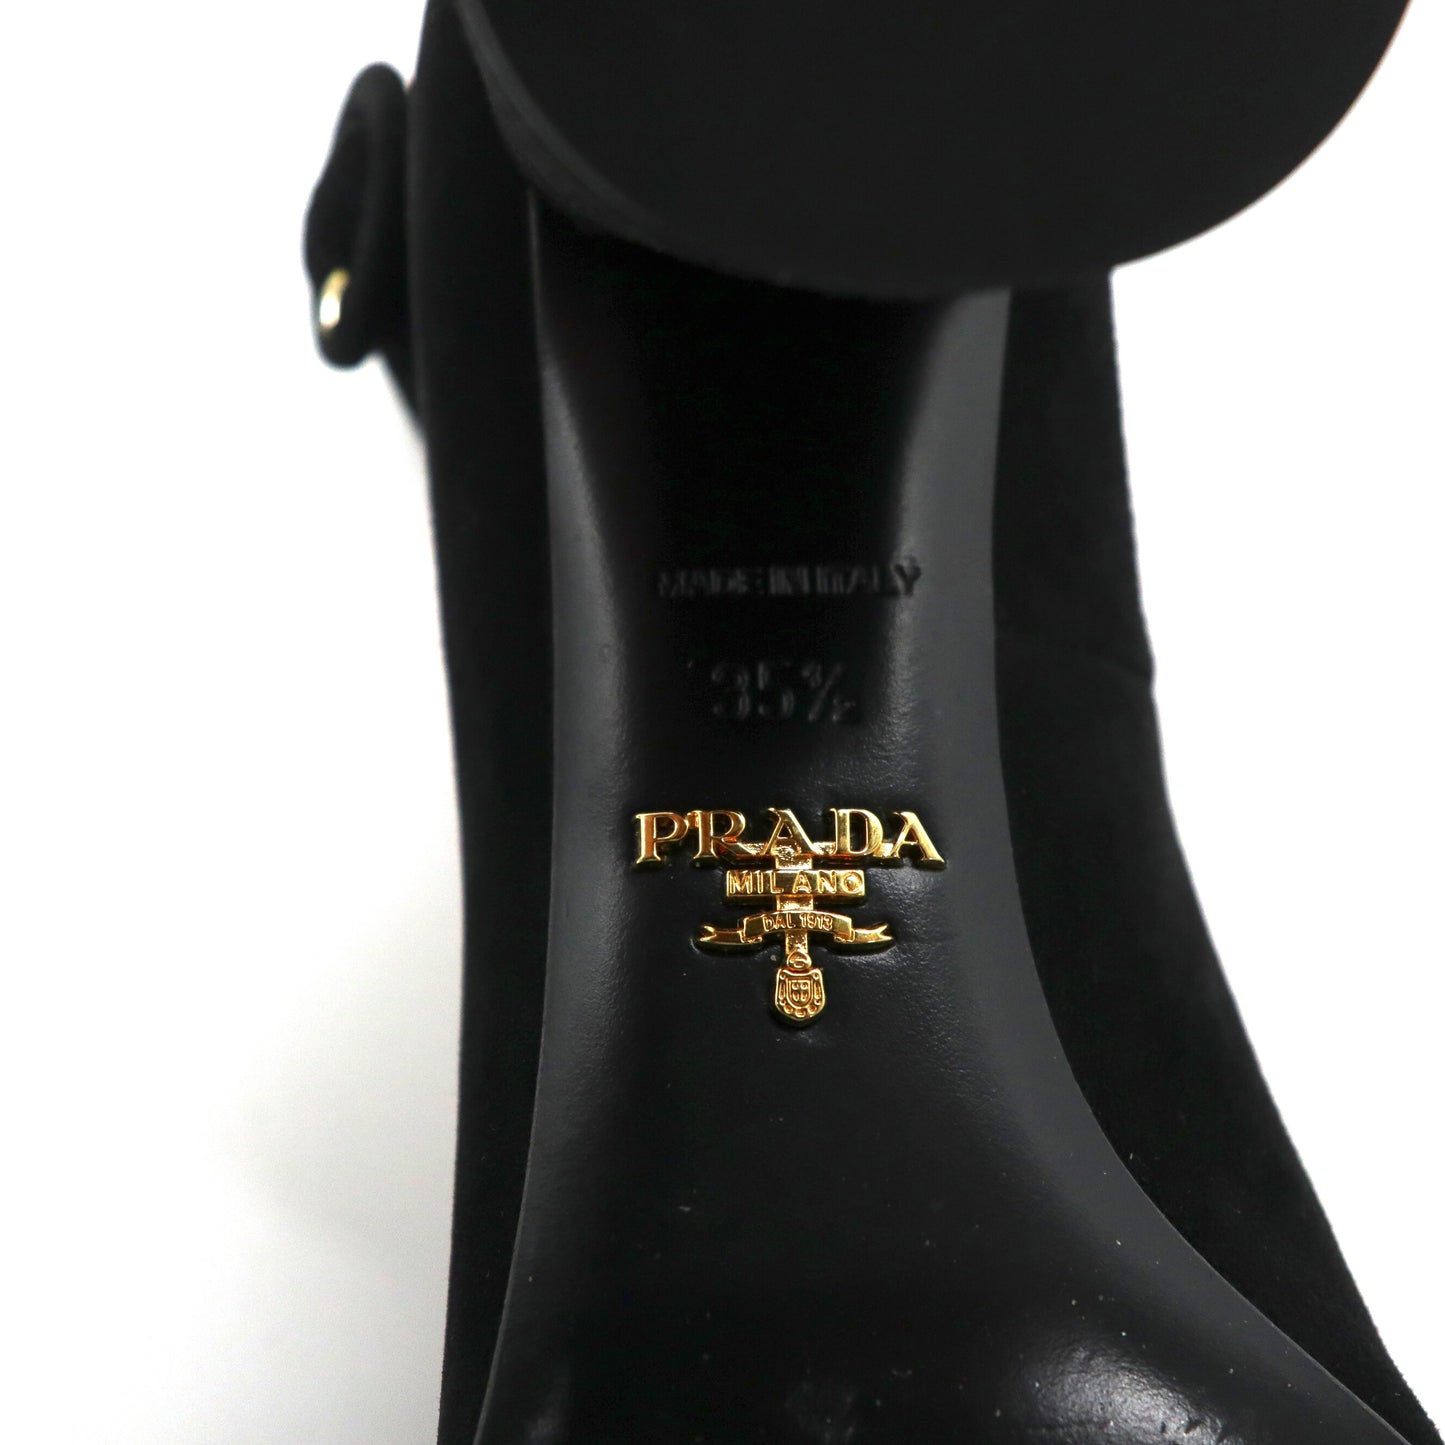 PRADA チャンキーヒール ストラップパンプス 22.5cm ブラック スエードレザー イタリア製